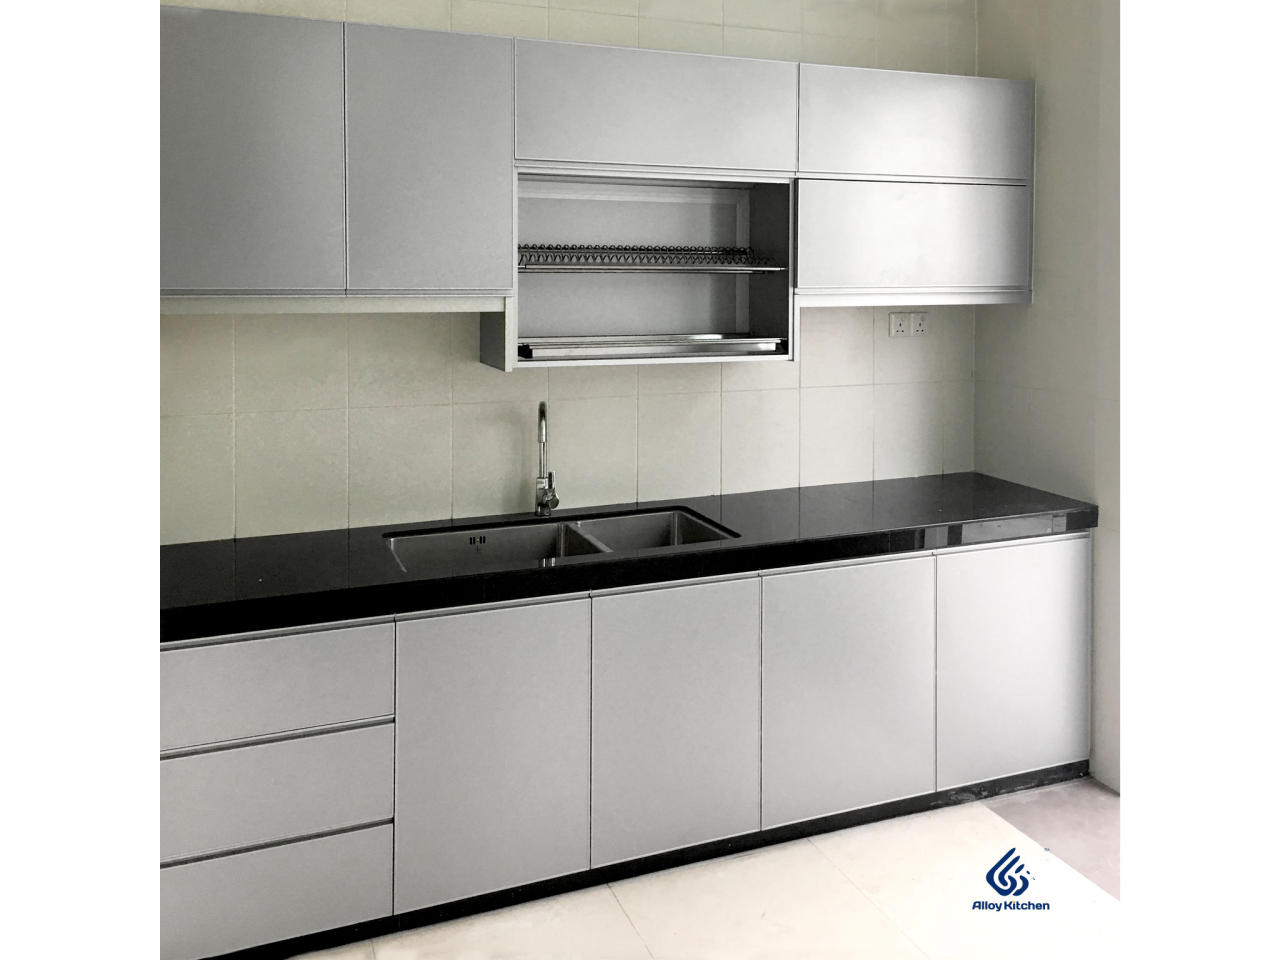 aluminium kitchen cabinet design